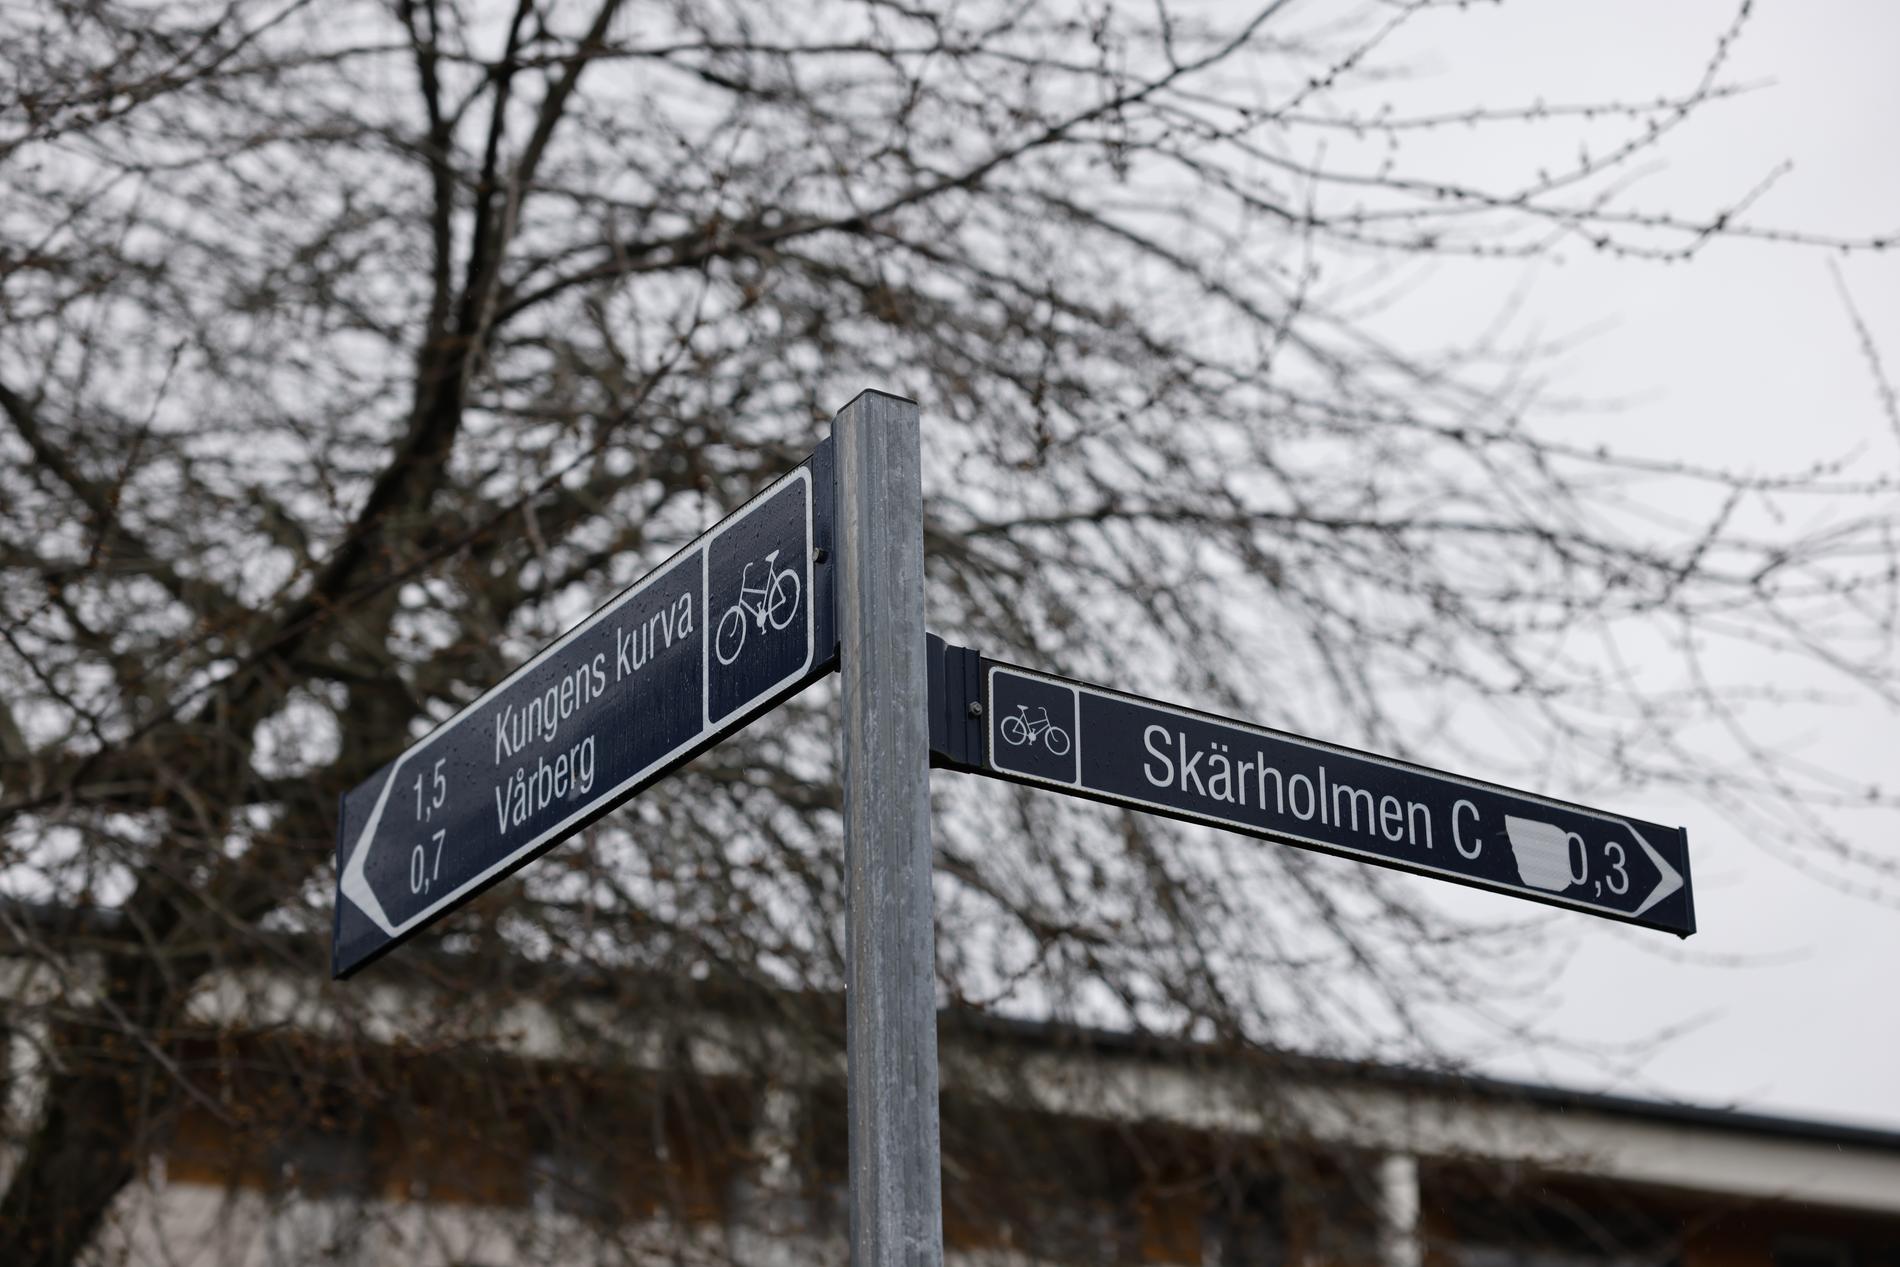 Skärholmen är en relativt fattig stadsdel med betydligt lägre medelinkomst än andra områden i närheten.